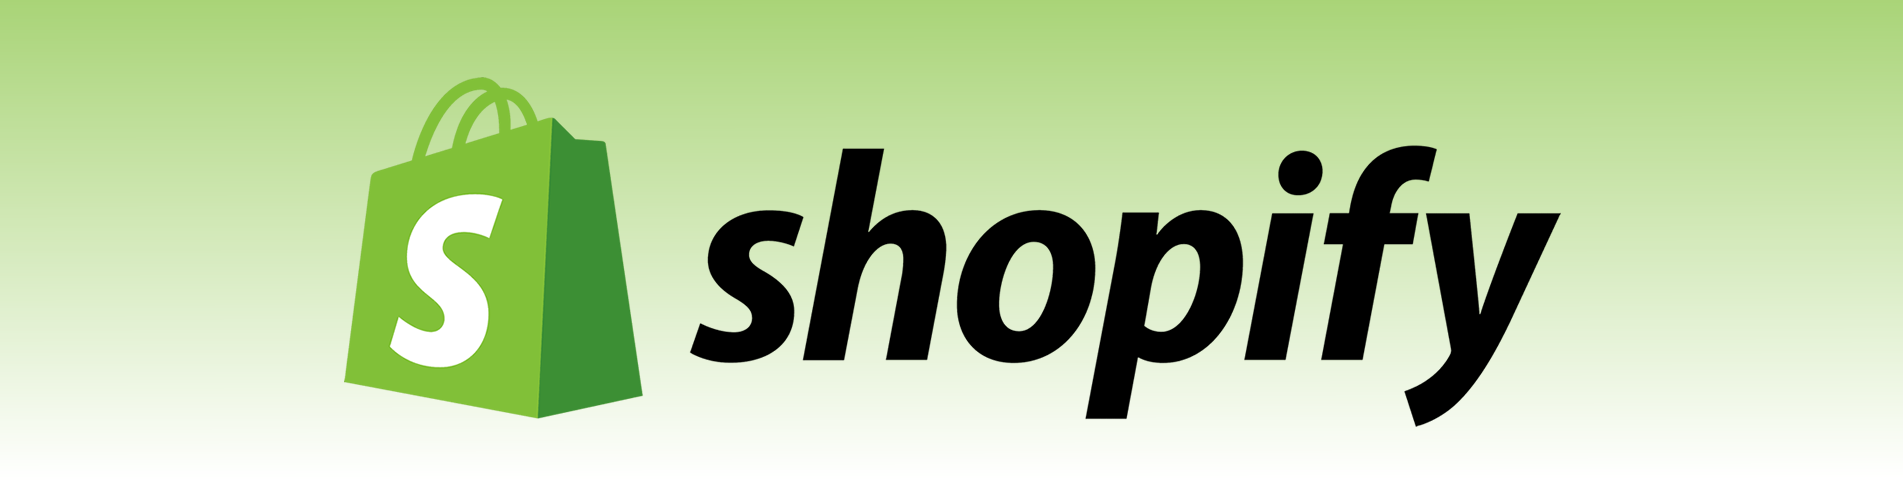 shopify shop